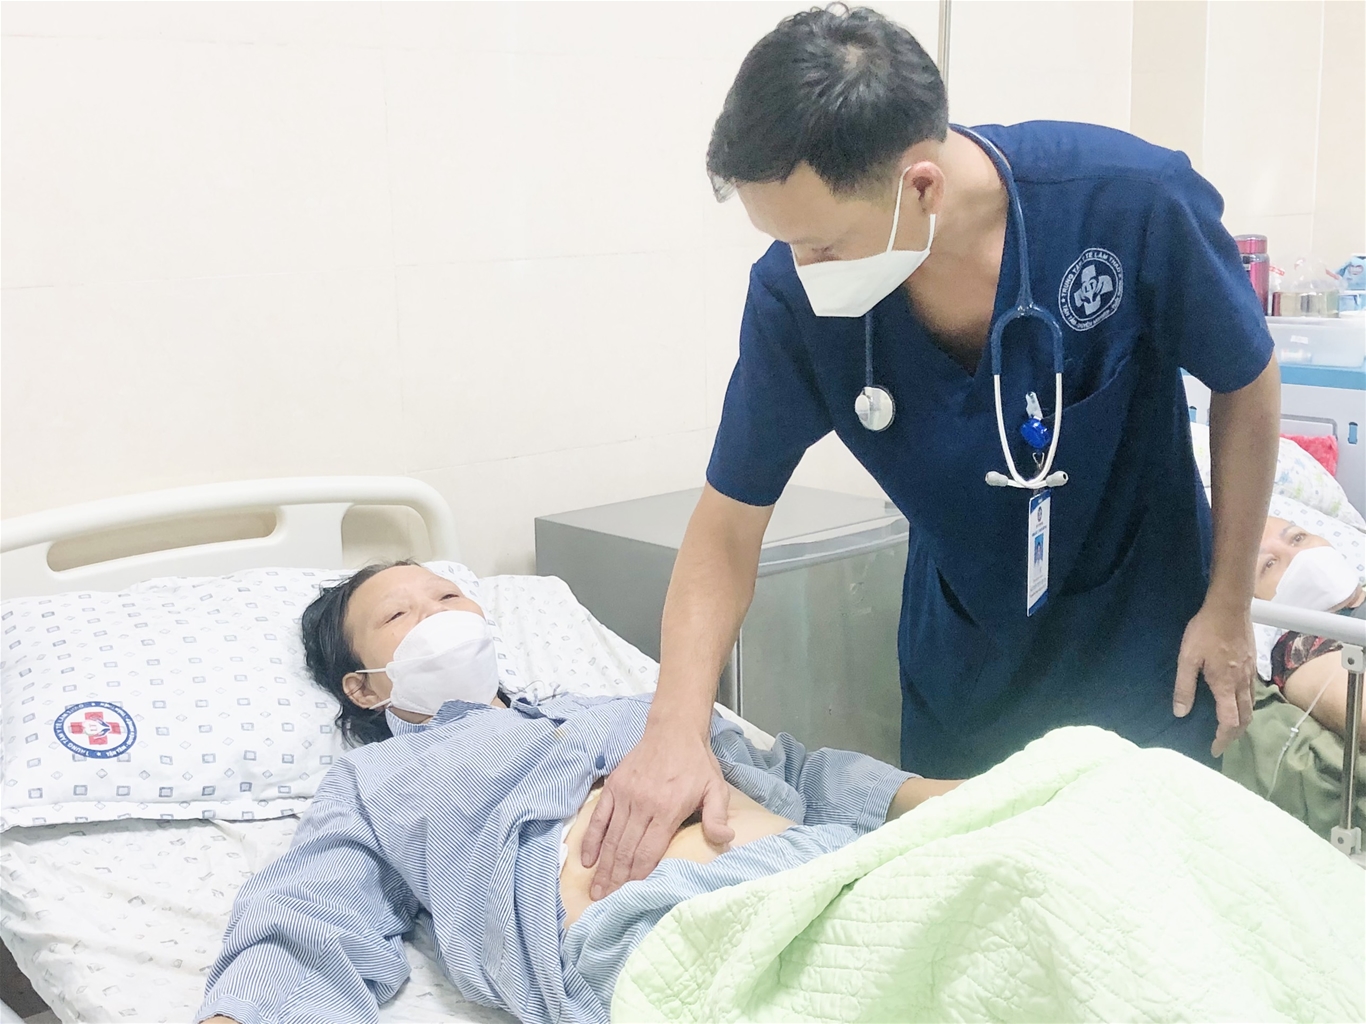 Trung tâm Y tế huyện Lâm Thao – tỉnh Phú Thọ: Đổi mới để phát triển và chăm sóc bảo vệ sức khỏe người dân tốt hơn 1